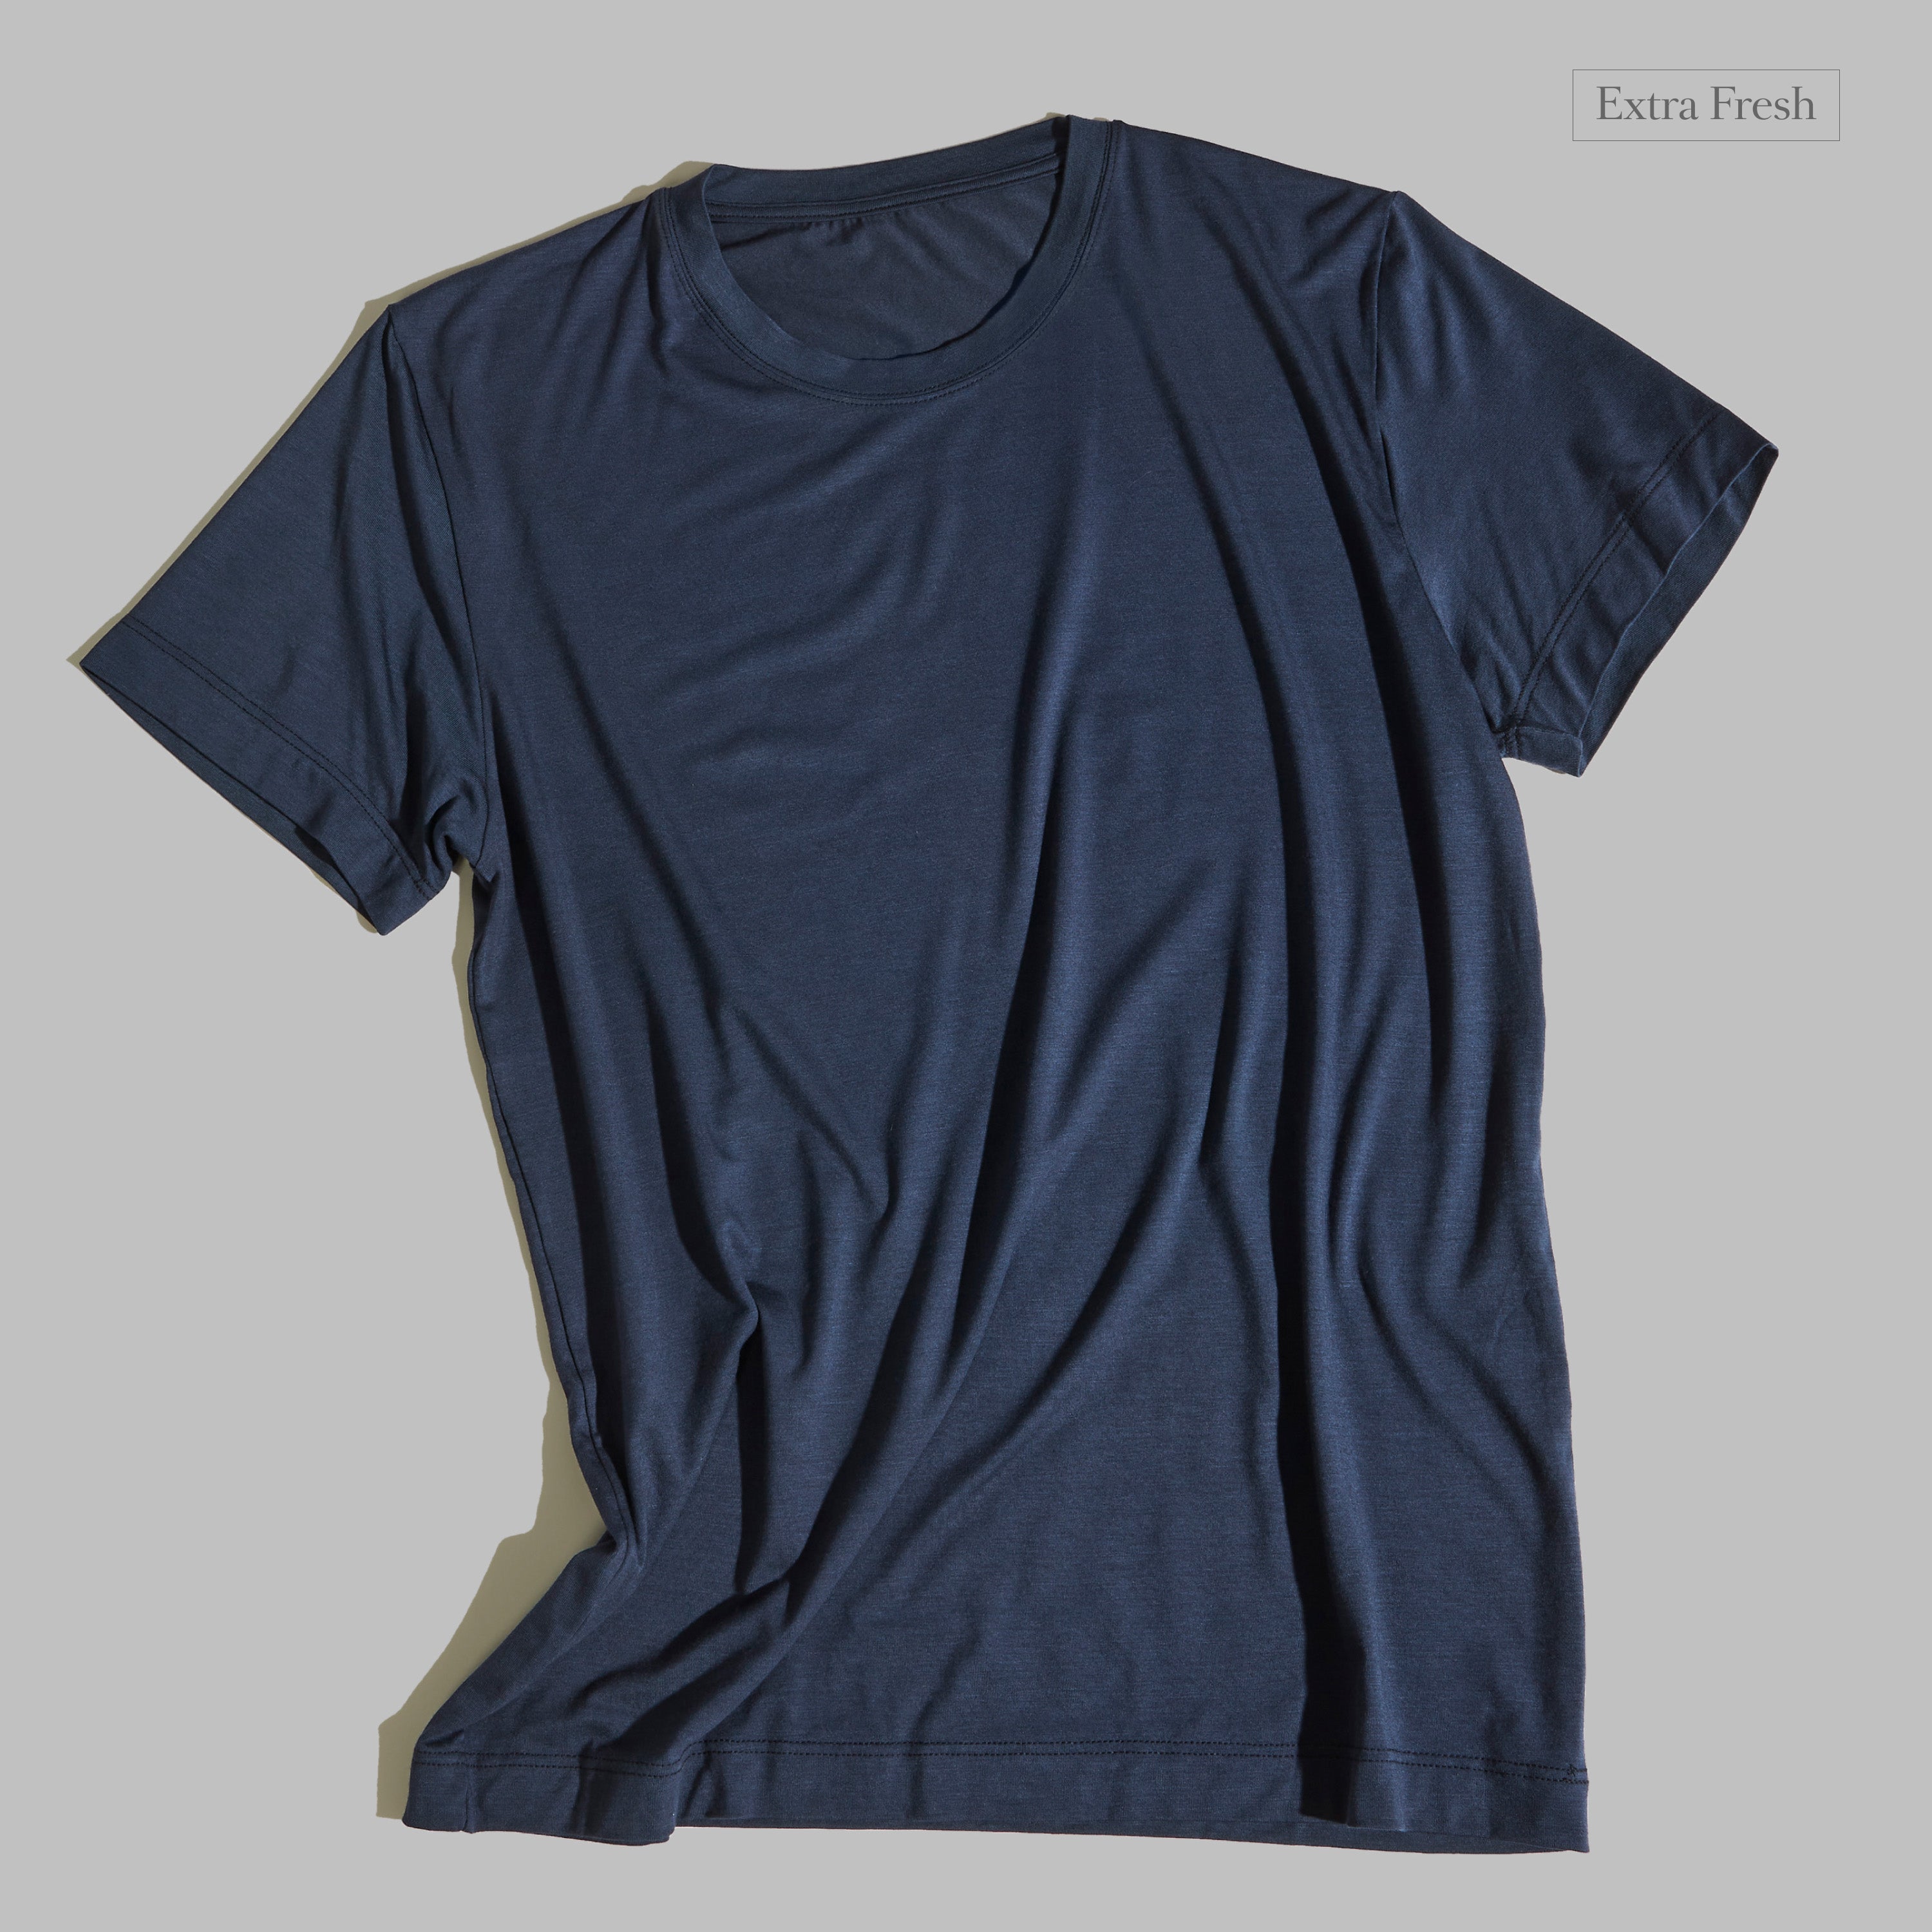 T-shirt Blu Navy Extra Fresh